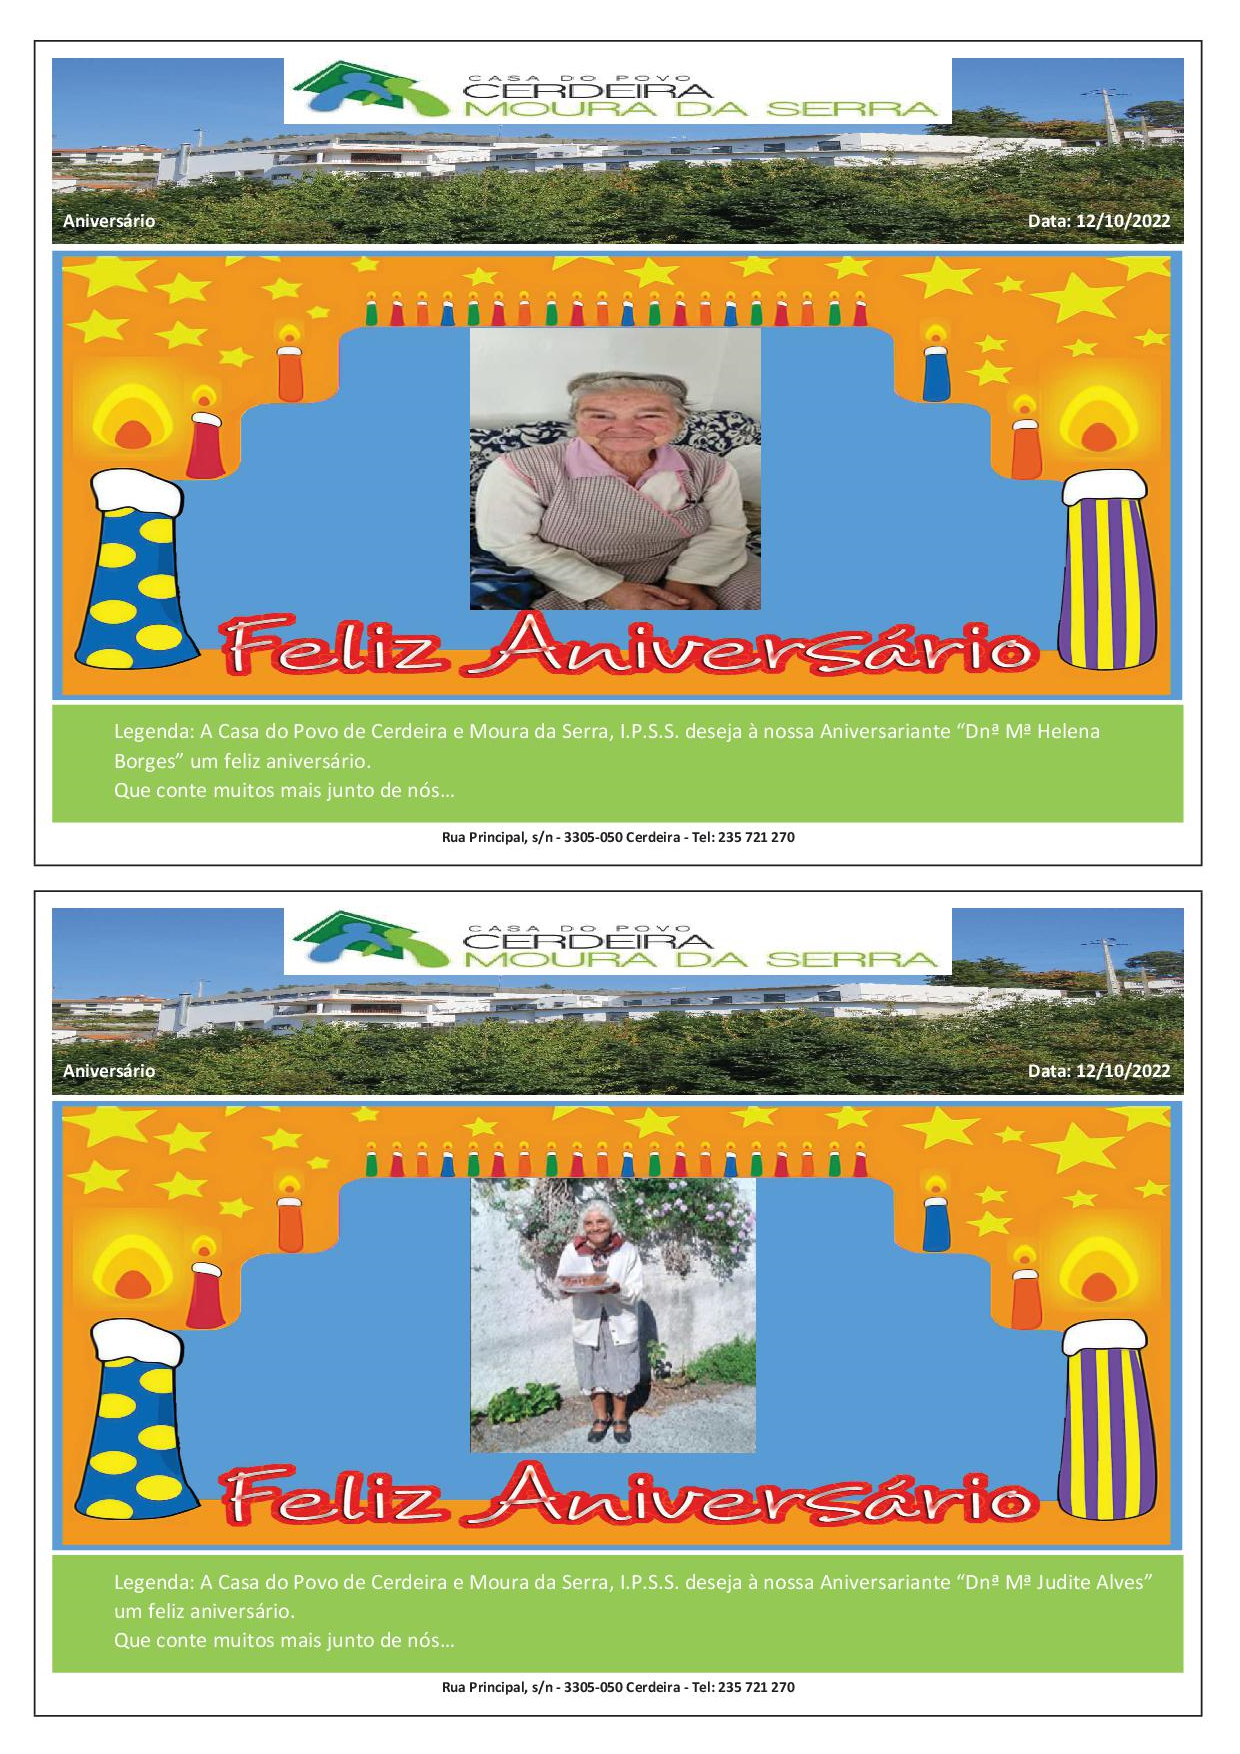 Feliz Aniversário às nossas Aniversariantes “Dnª Mª Judite Alves” e “Dnª Mª Helena Borges” em 12/10/2022